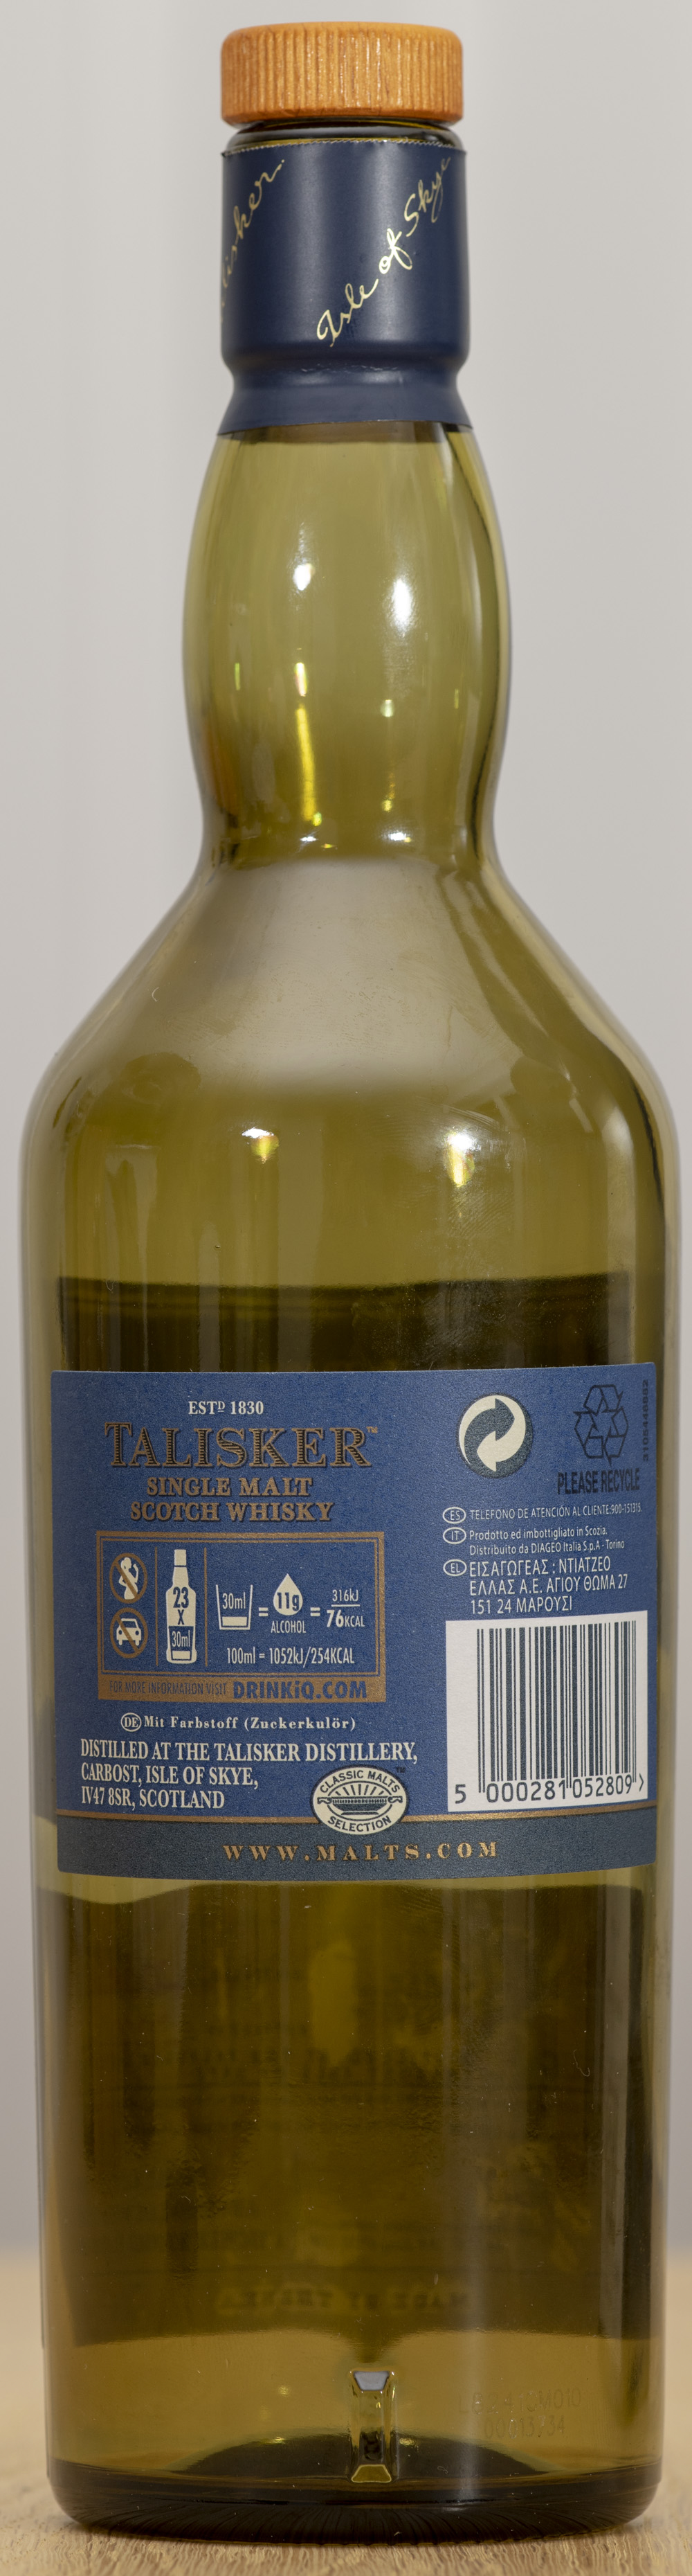 Billede: PHC_1583 - Talisker Distillers edition - bottle back.jpg